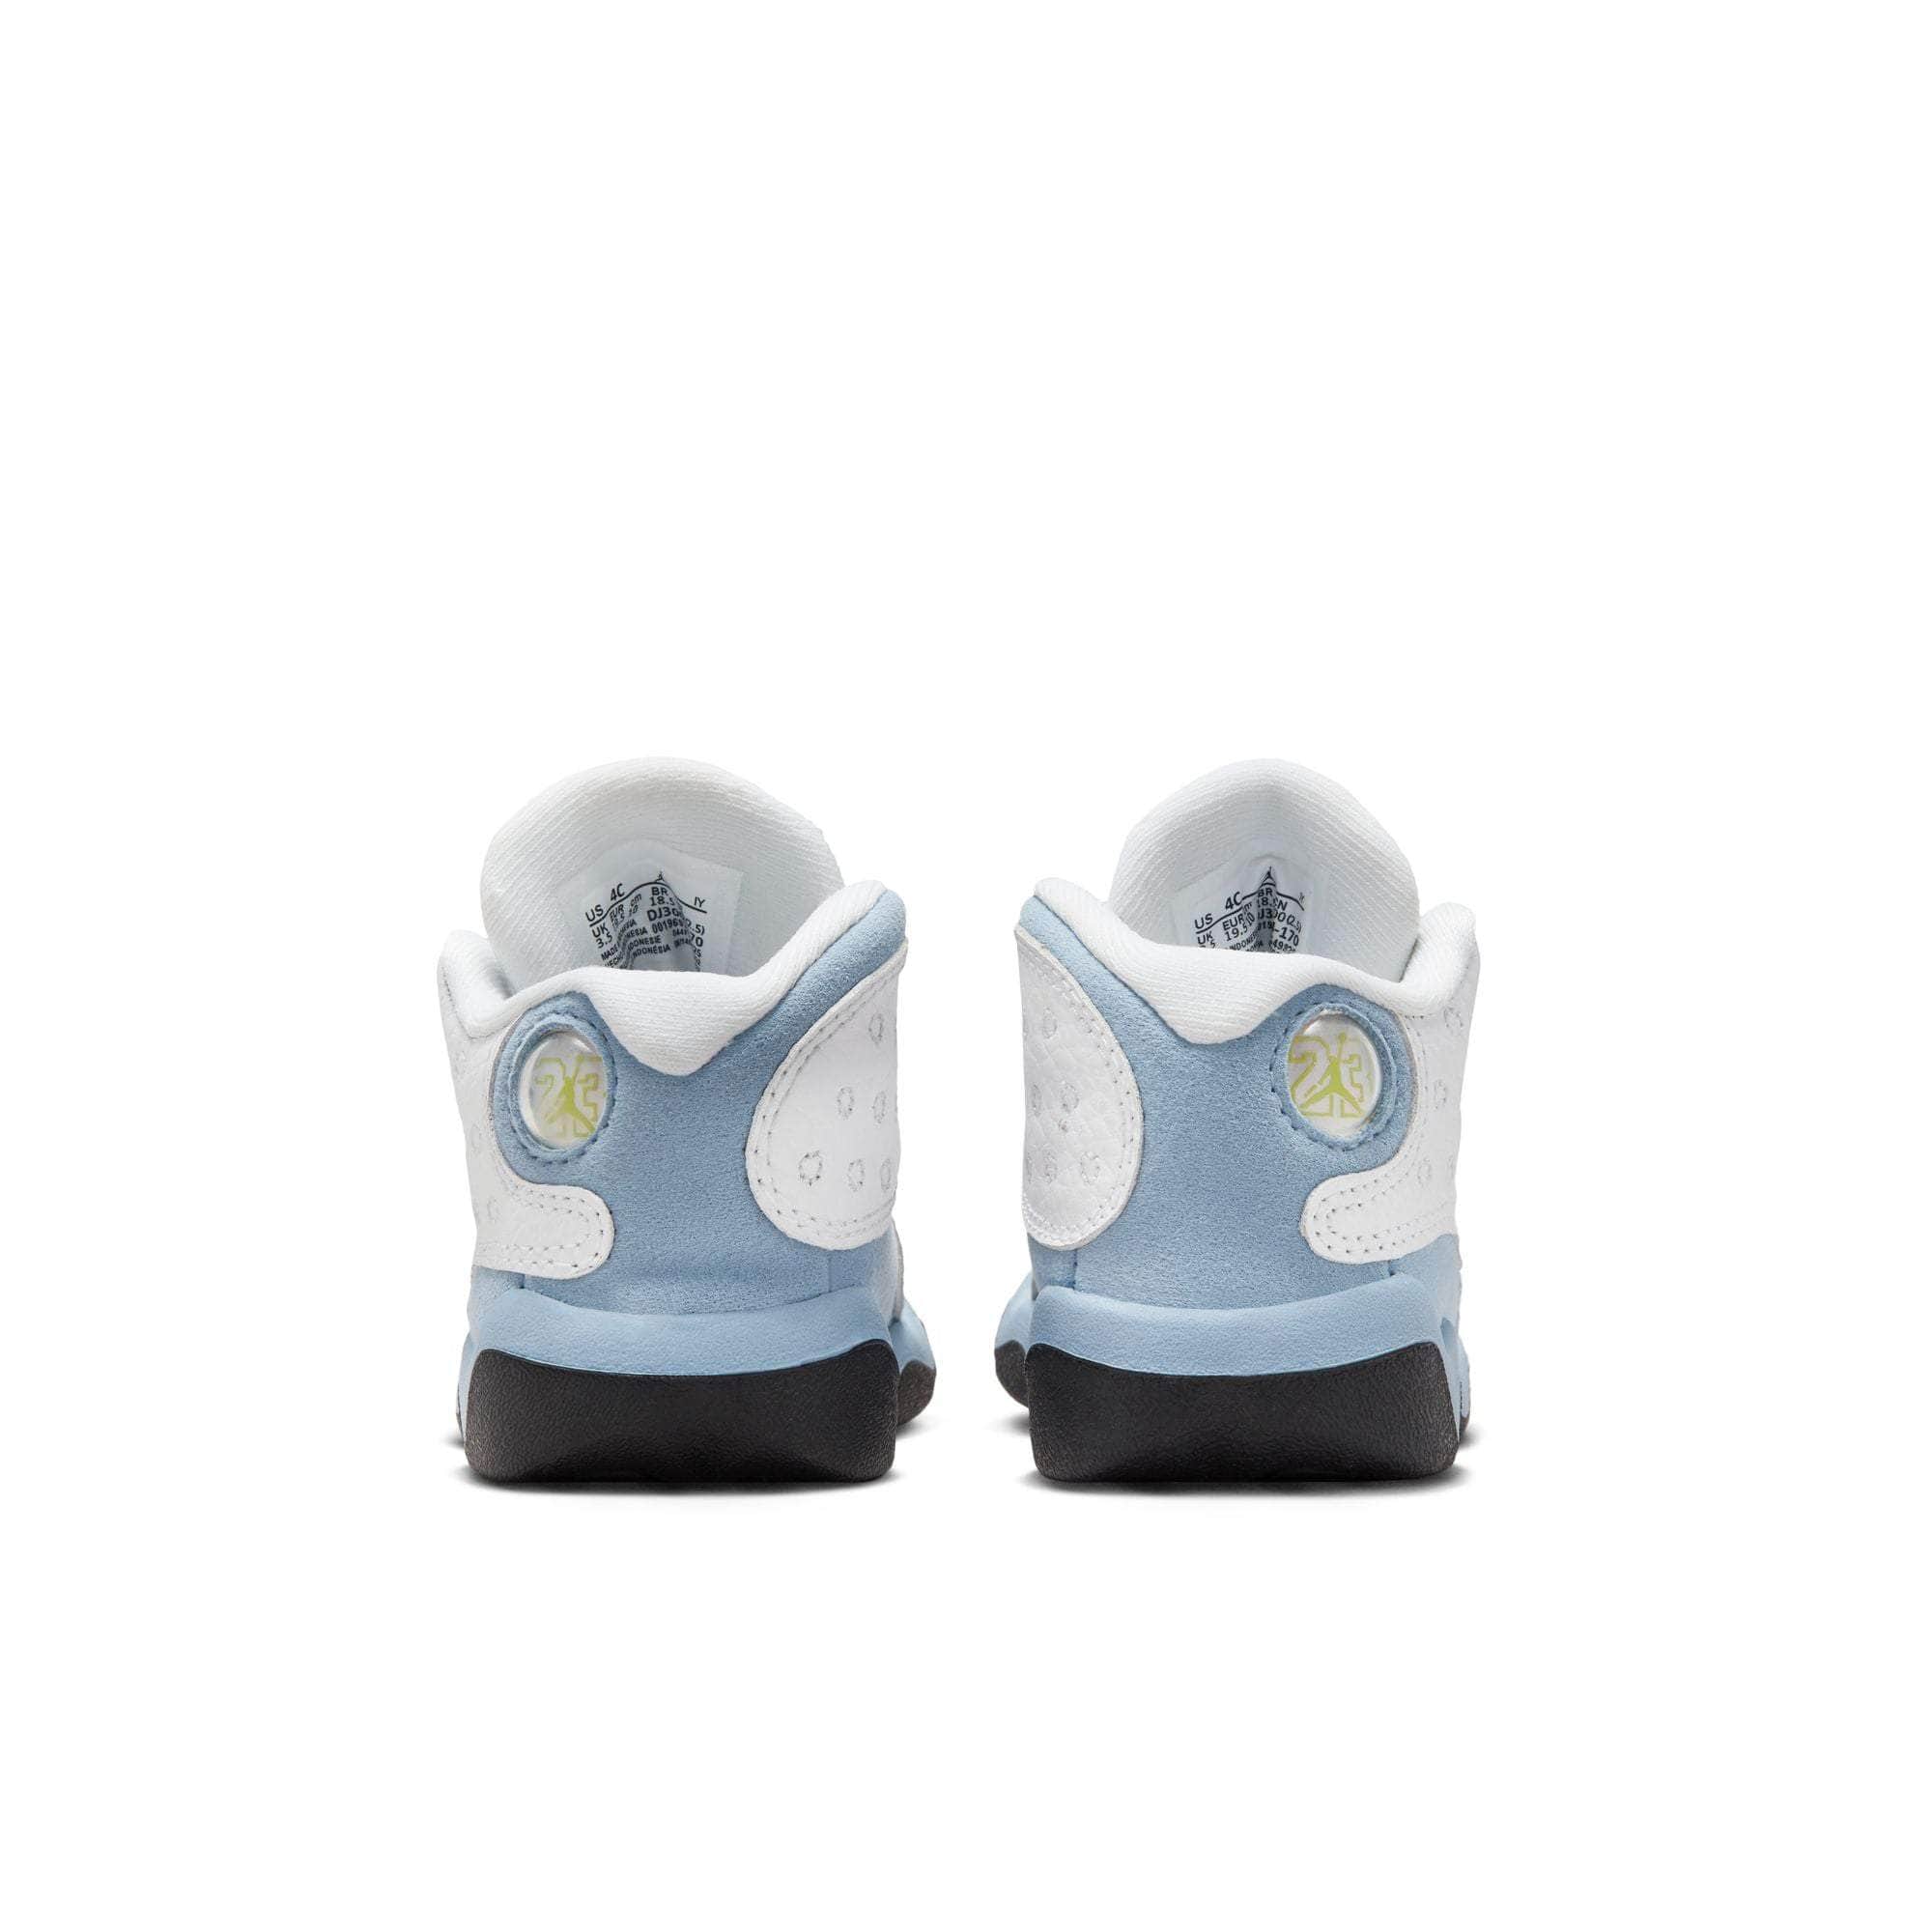 Air Jordan Footwear Air Jordan 13 “Blue Grey” - Toddler's TD